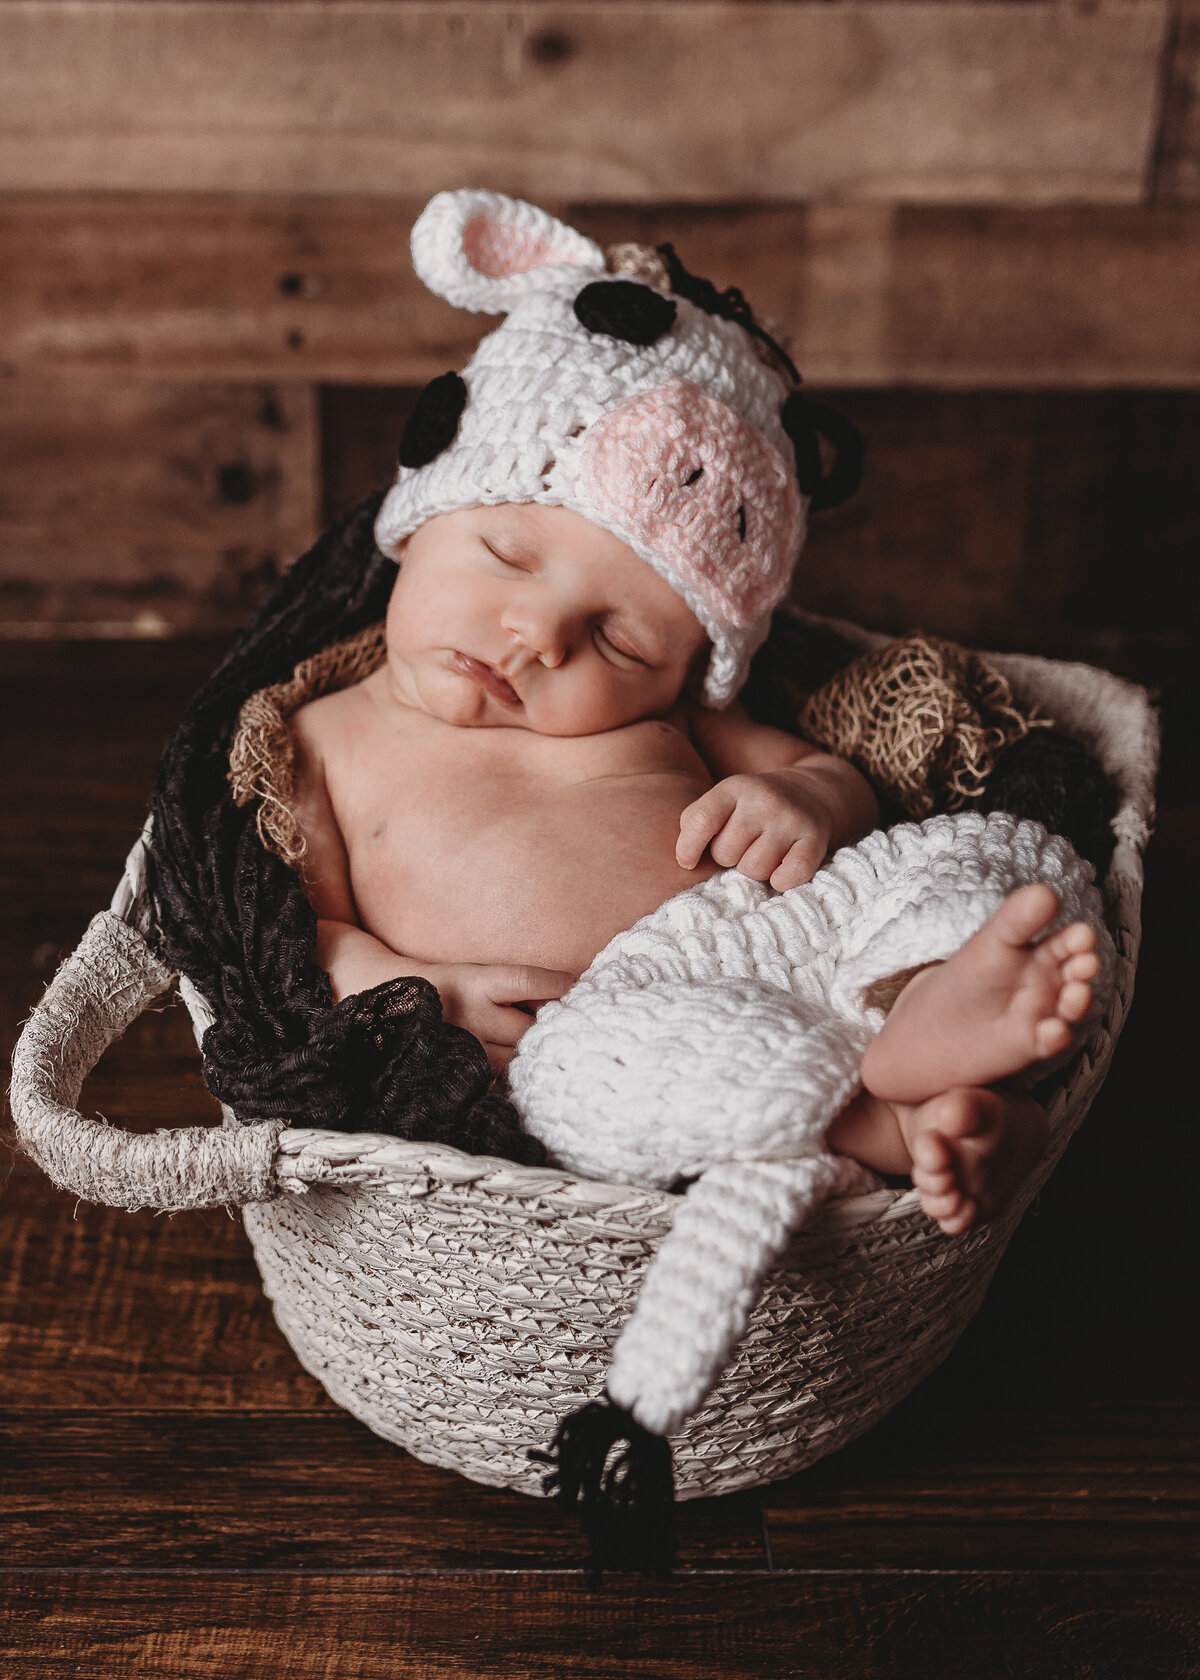 A newborn cozy in a basket.